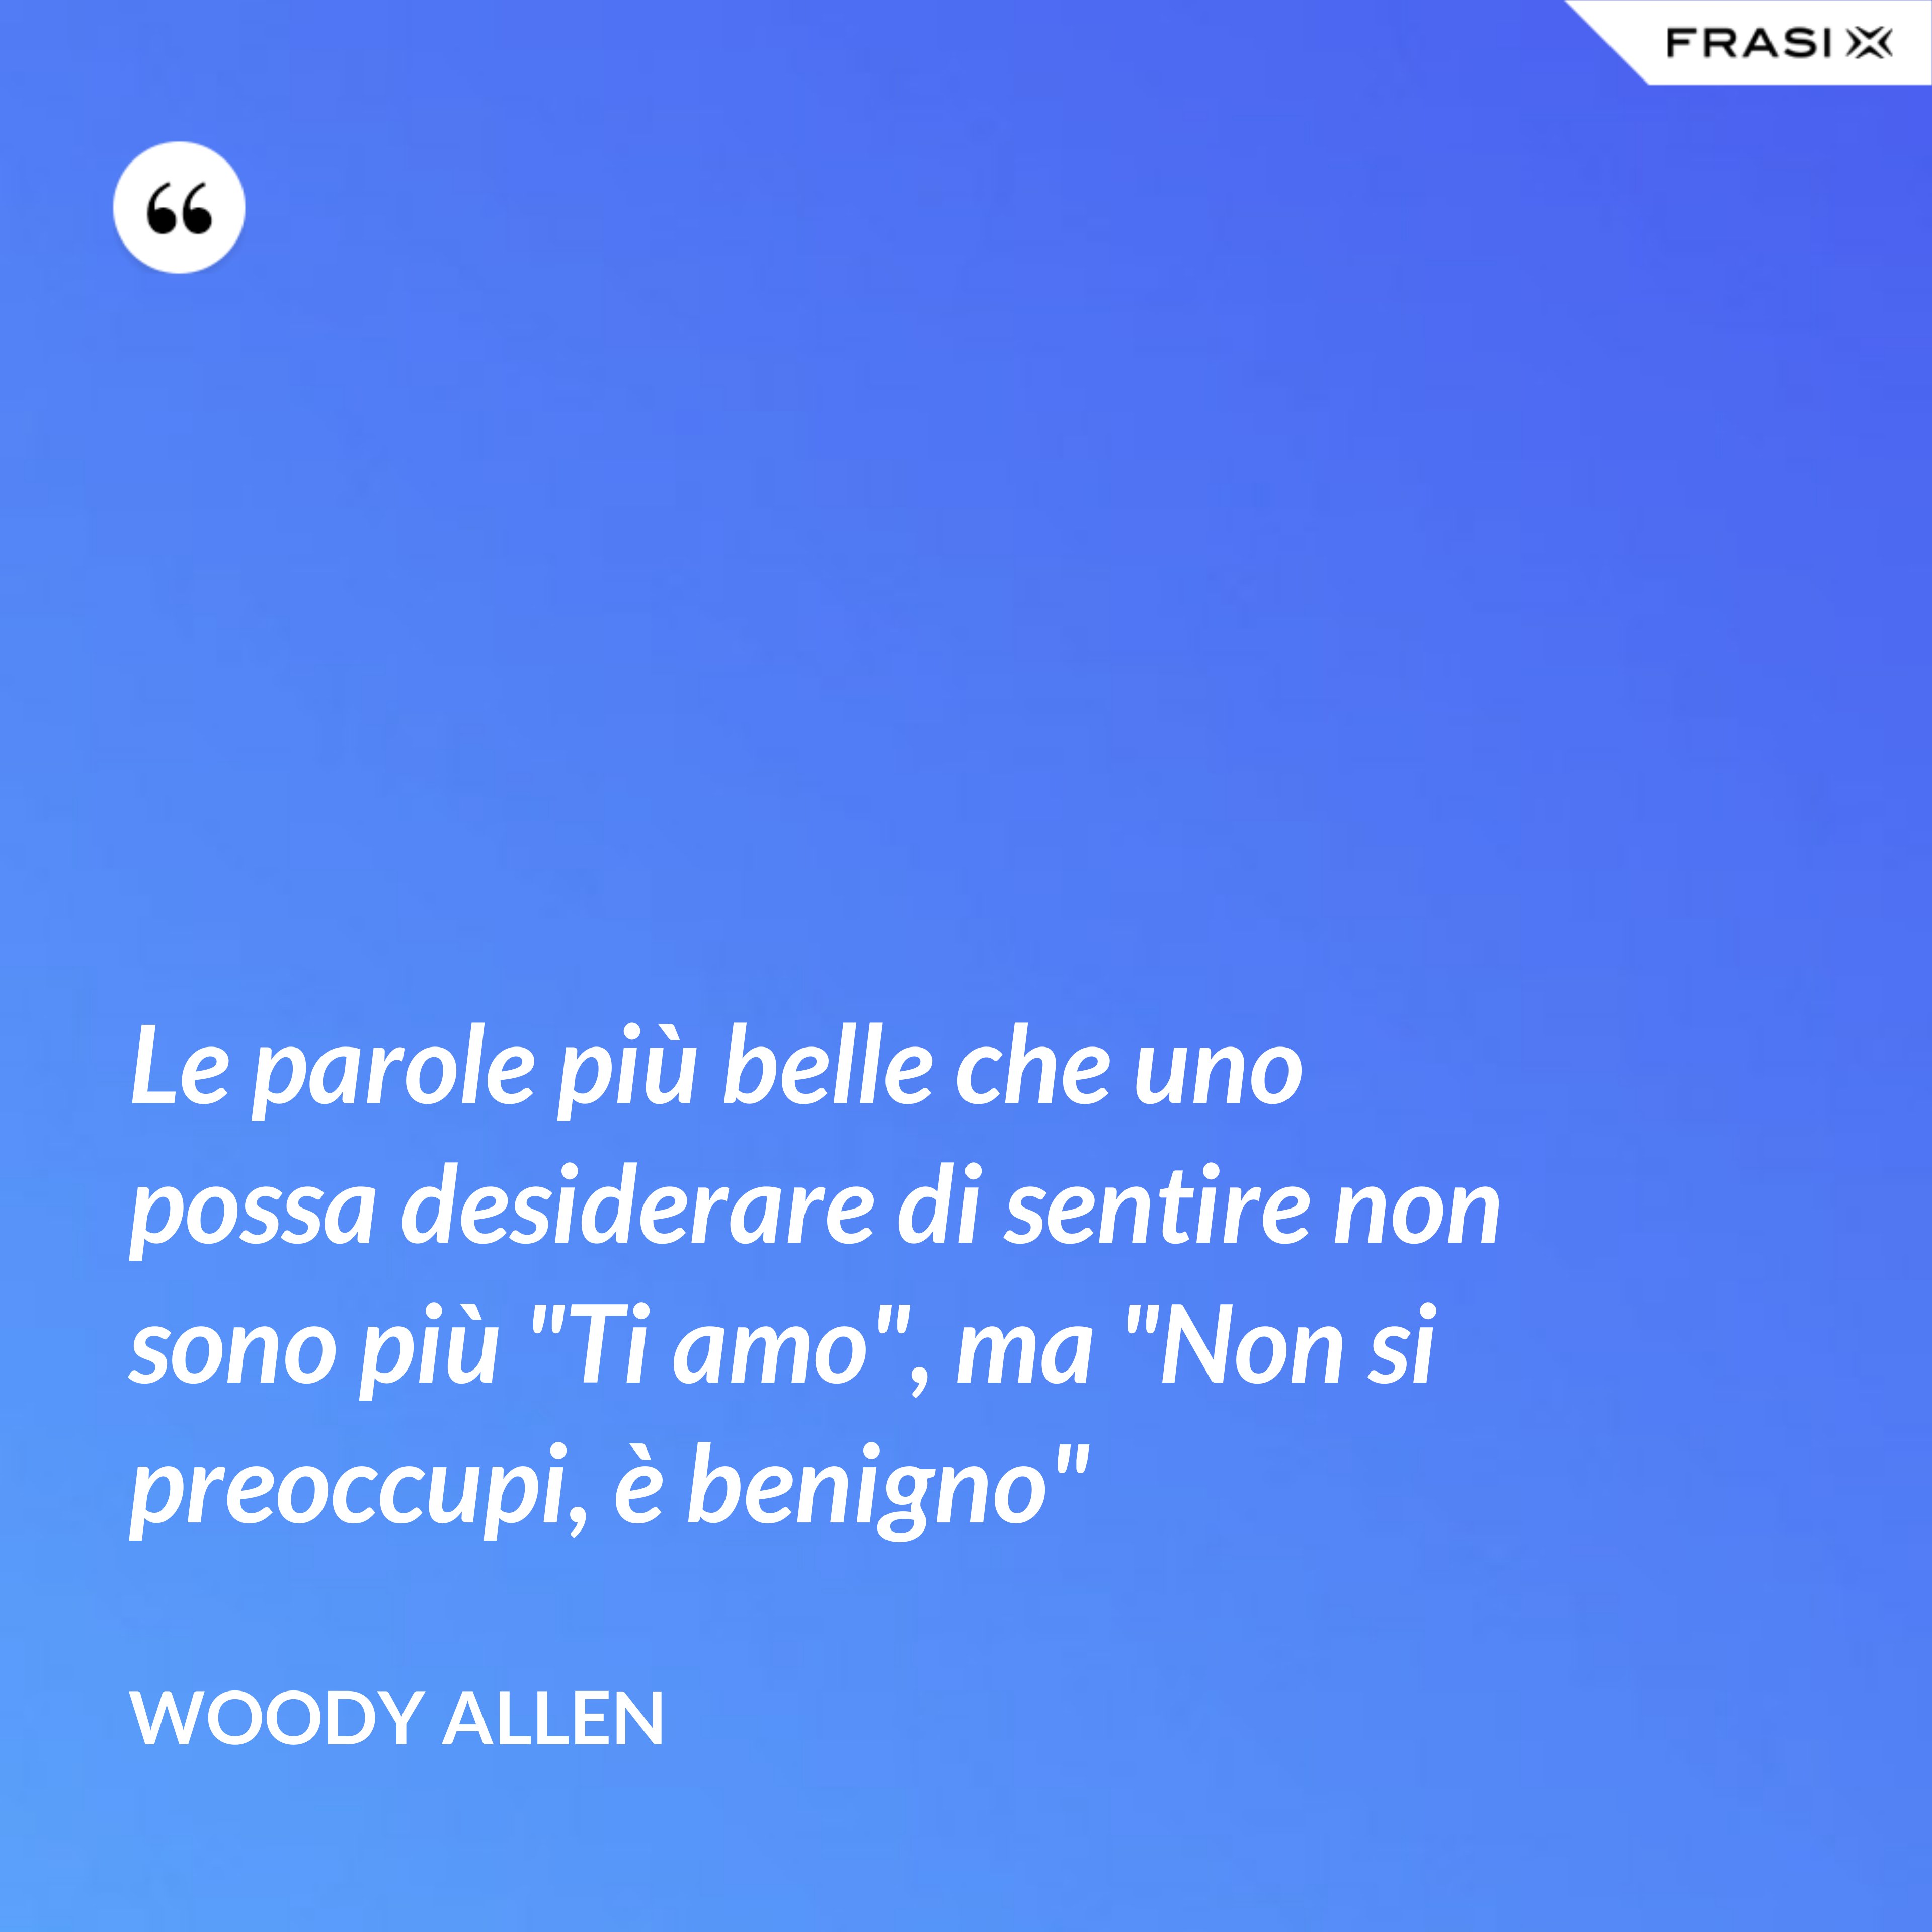 Le parole più belle che uno possa desiderare di sentire non sono più "Ti amo", ma "Non si preoccupi, è benigno" - Woody Allen